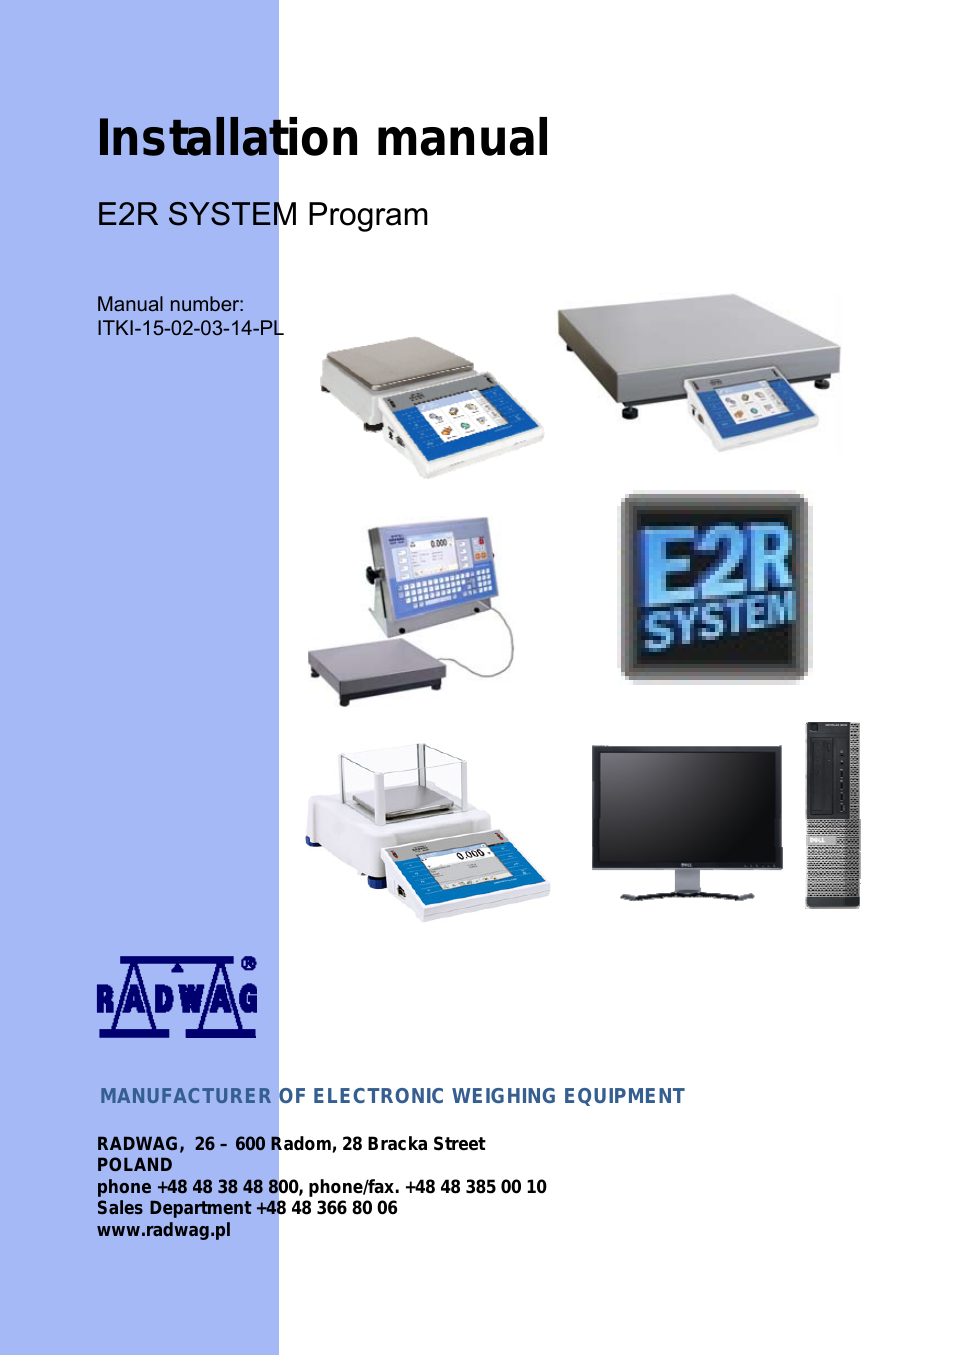 E2R System